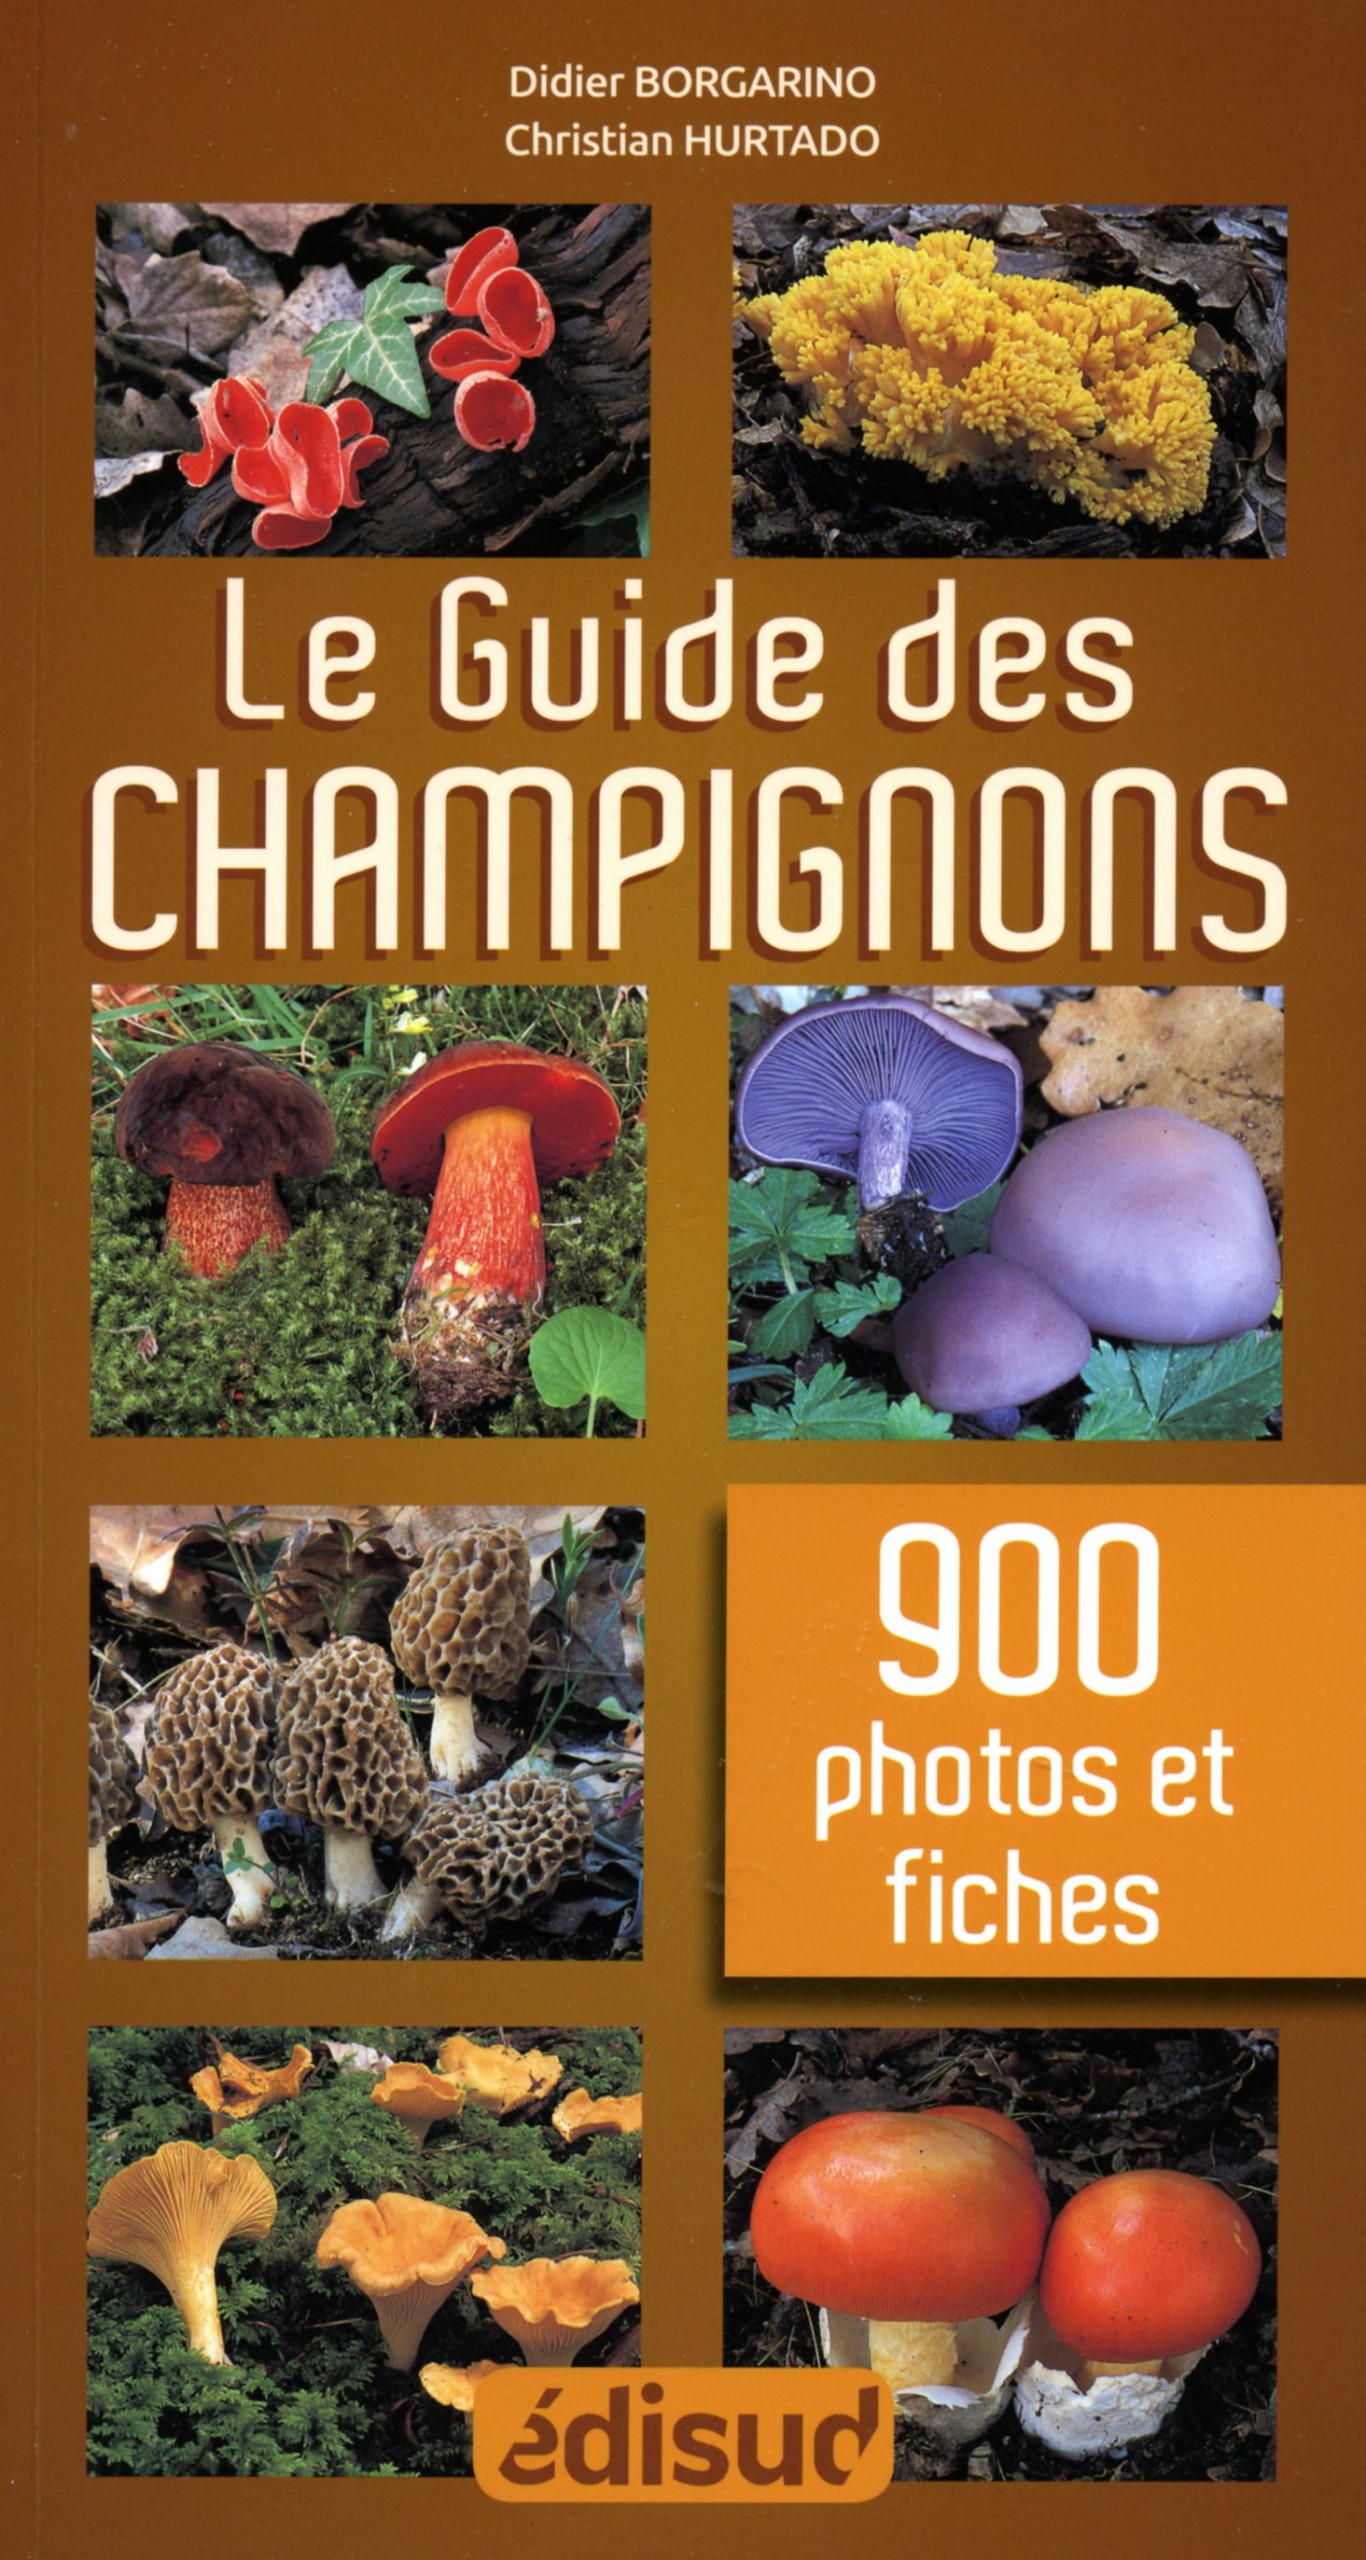 Champignons : plus de 300 espèces recensées dans un nouveau guide illustré